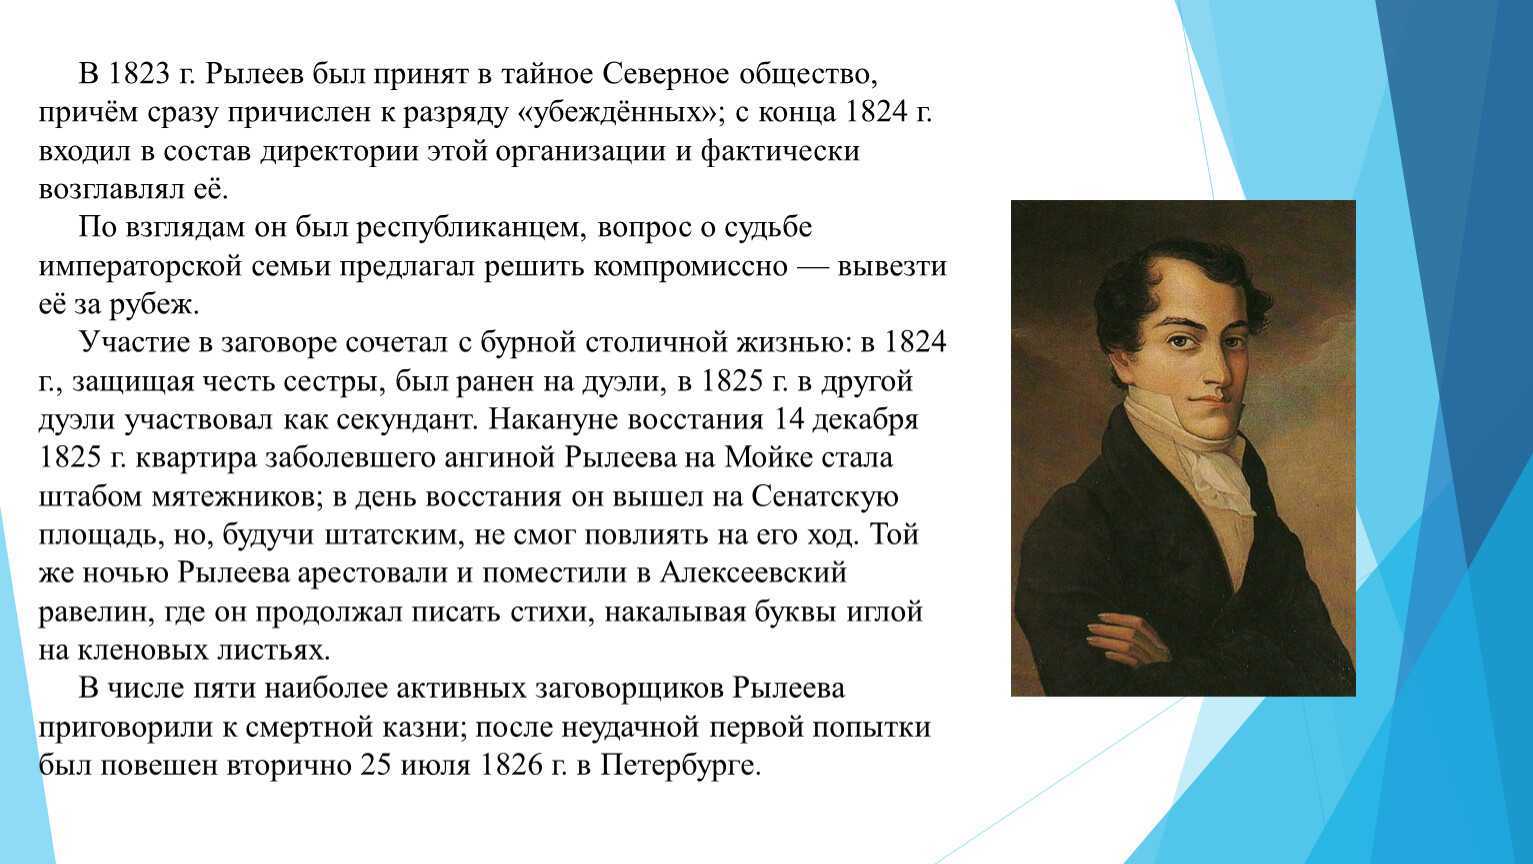 Рылеев кондратий федорович (1795-1826) - биография, жизнь и творчество поэта